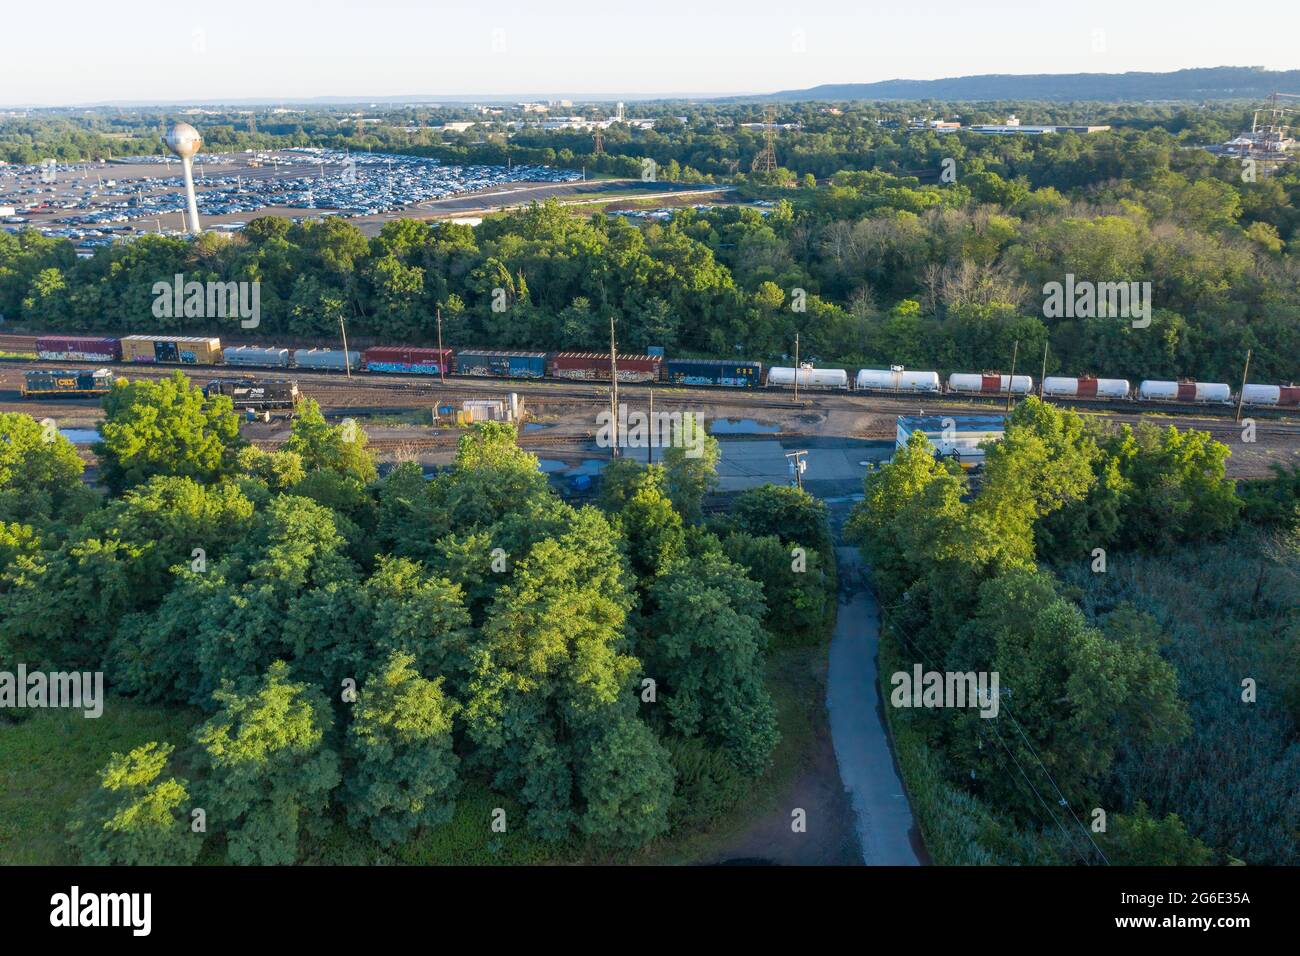 Vue aérienne d'un train se déplaçant le long des voies entourées d'arbres verts. Banque D'Images